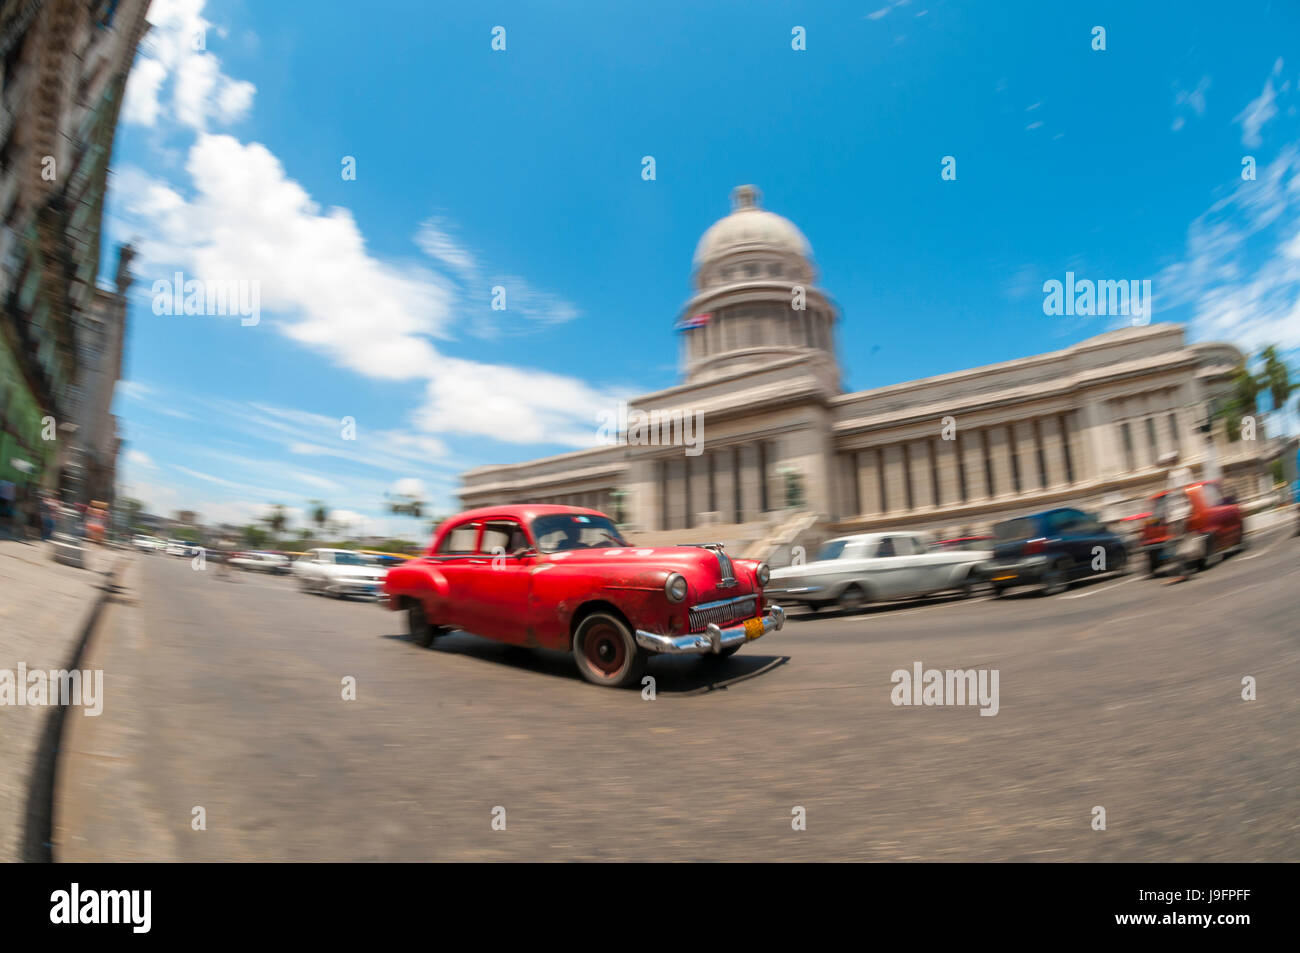 L'Avana, Cuba - Giugno, 2011: Classic American vintage cubano taxi auto passa di fronte al Capitolio edificio nel centro di Avana in motion blur. Foto Stock